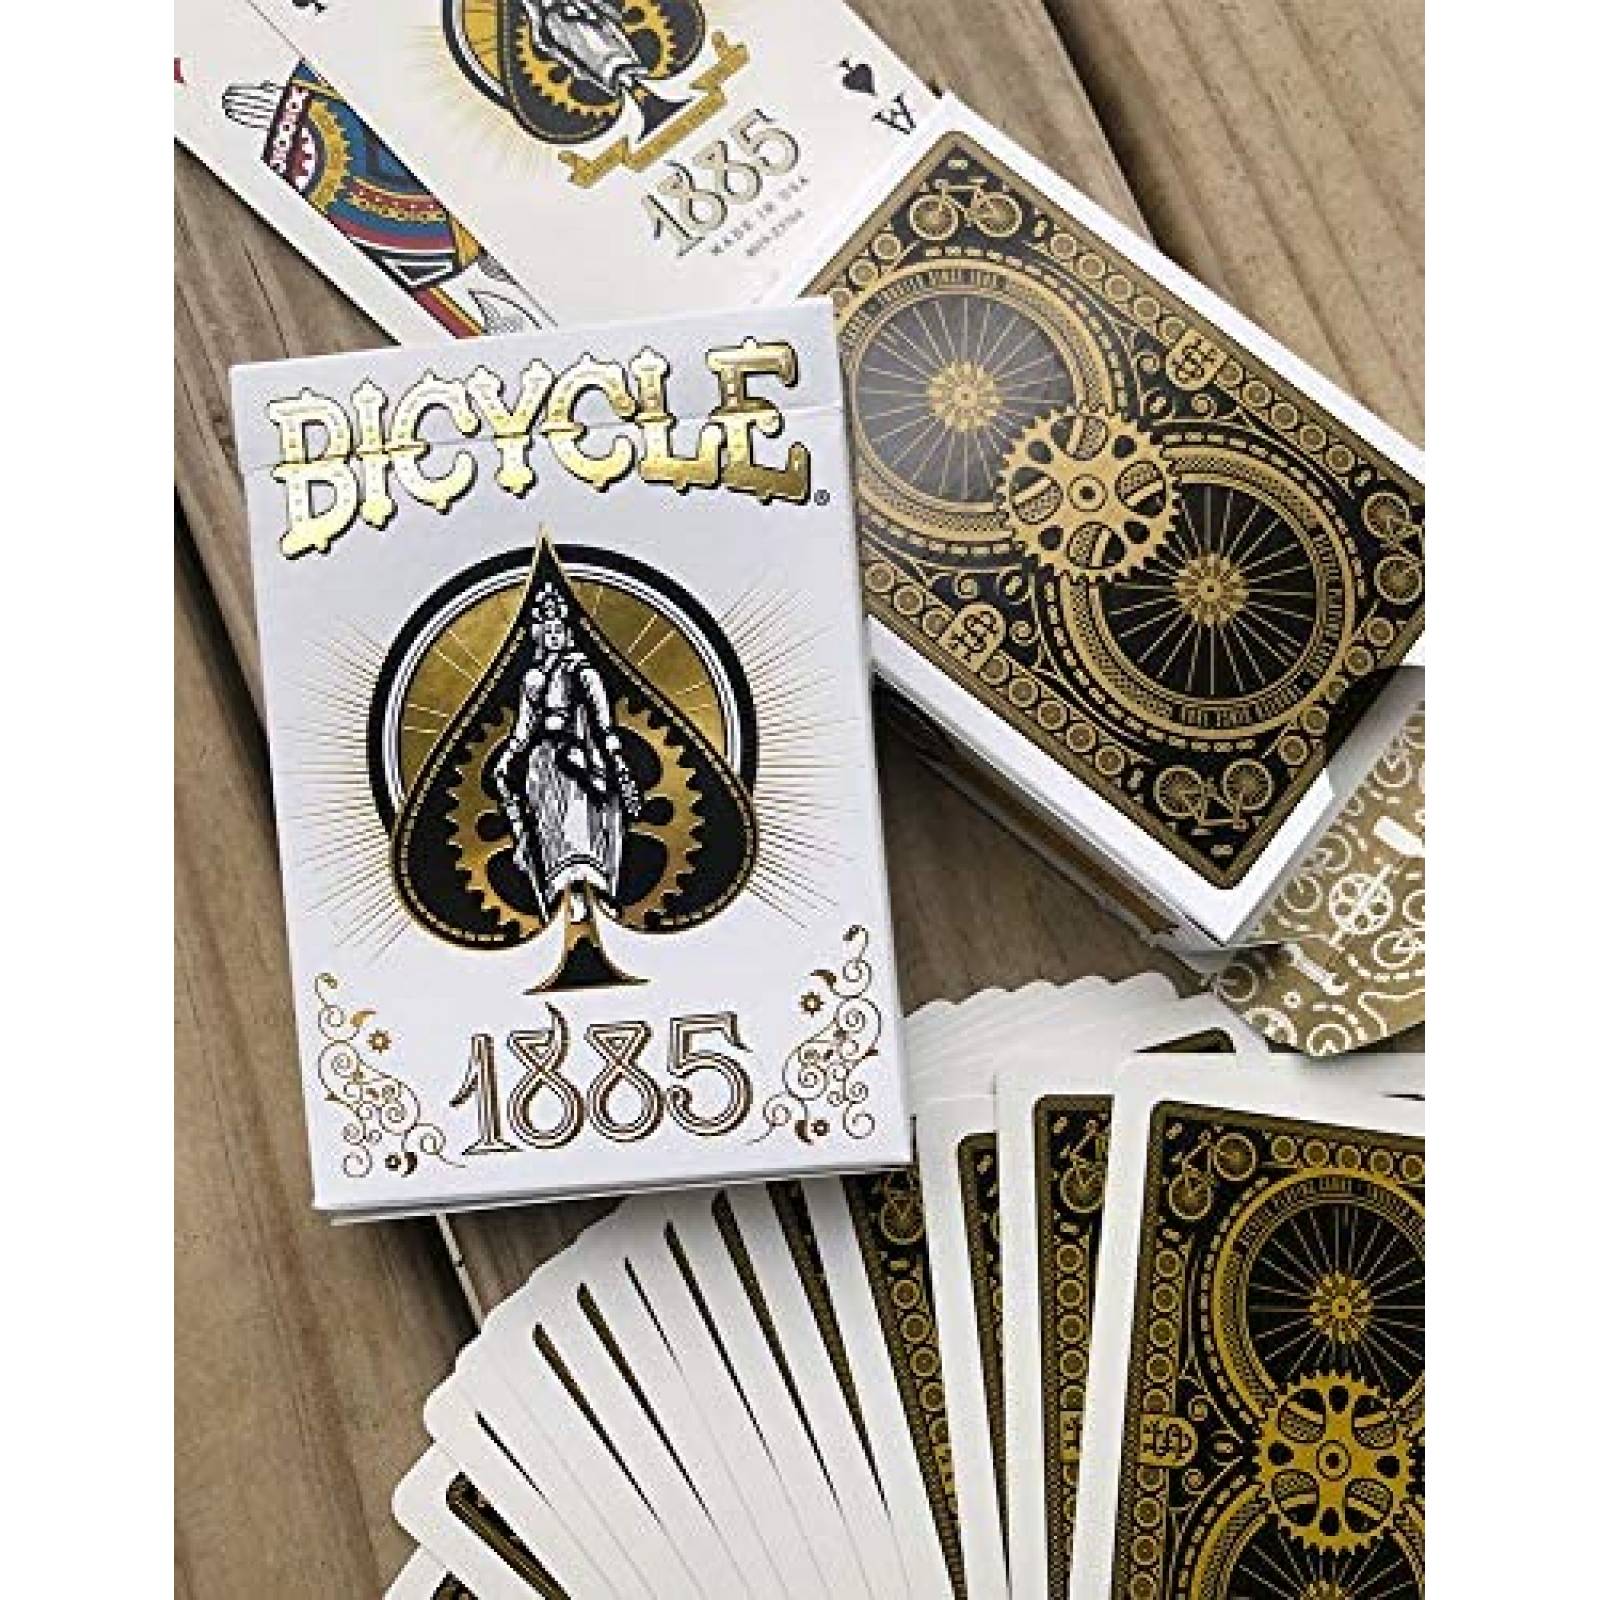 Cartas Bicycle Bicycle 1885 Diseño Clásico para Uso Óptimo